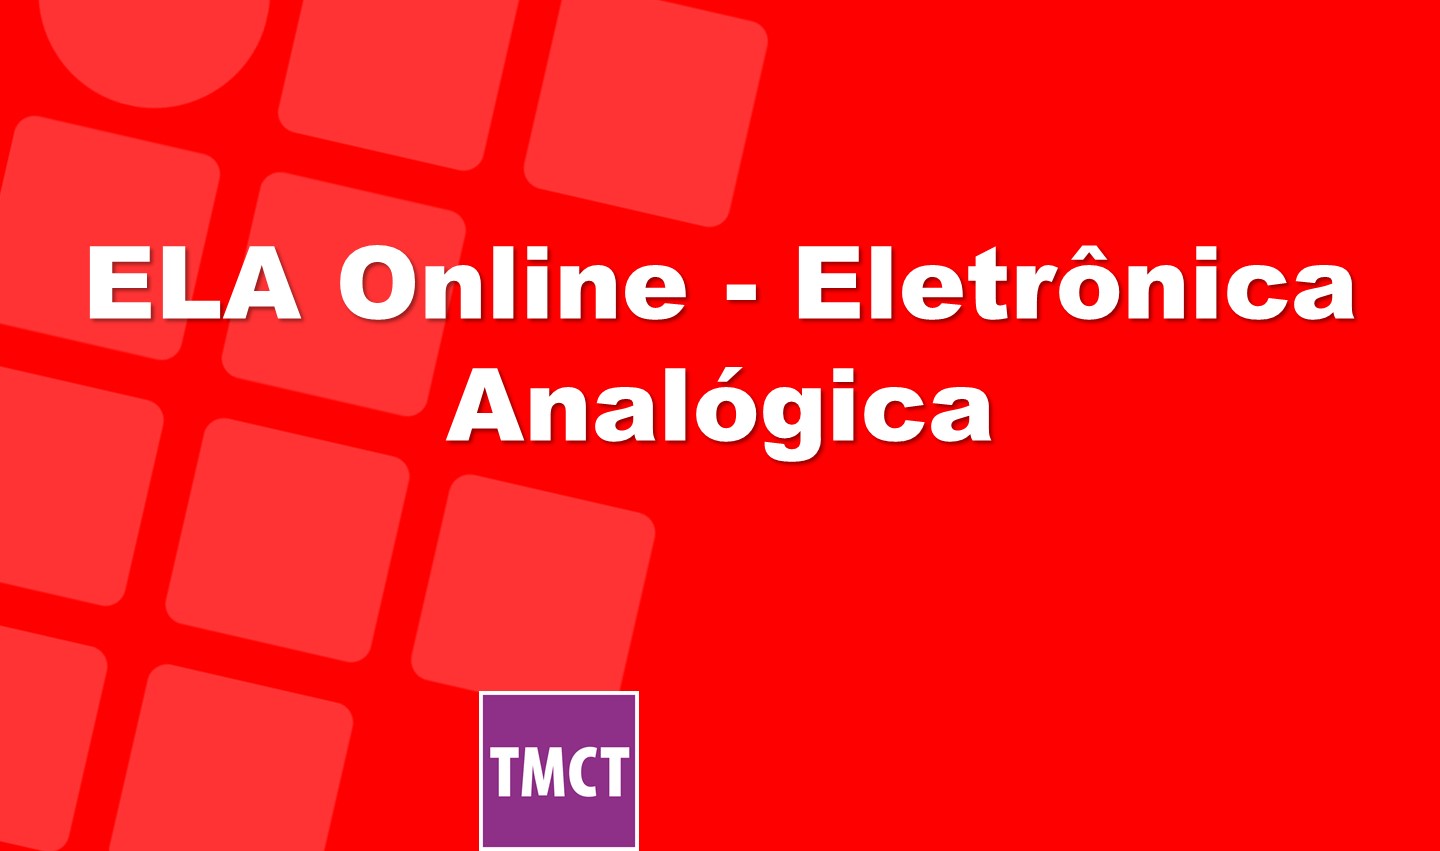 ELA Online - Eletrônica Analógica - terças, às 19h30